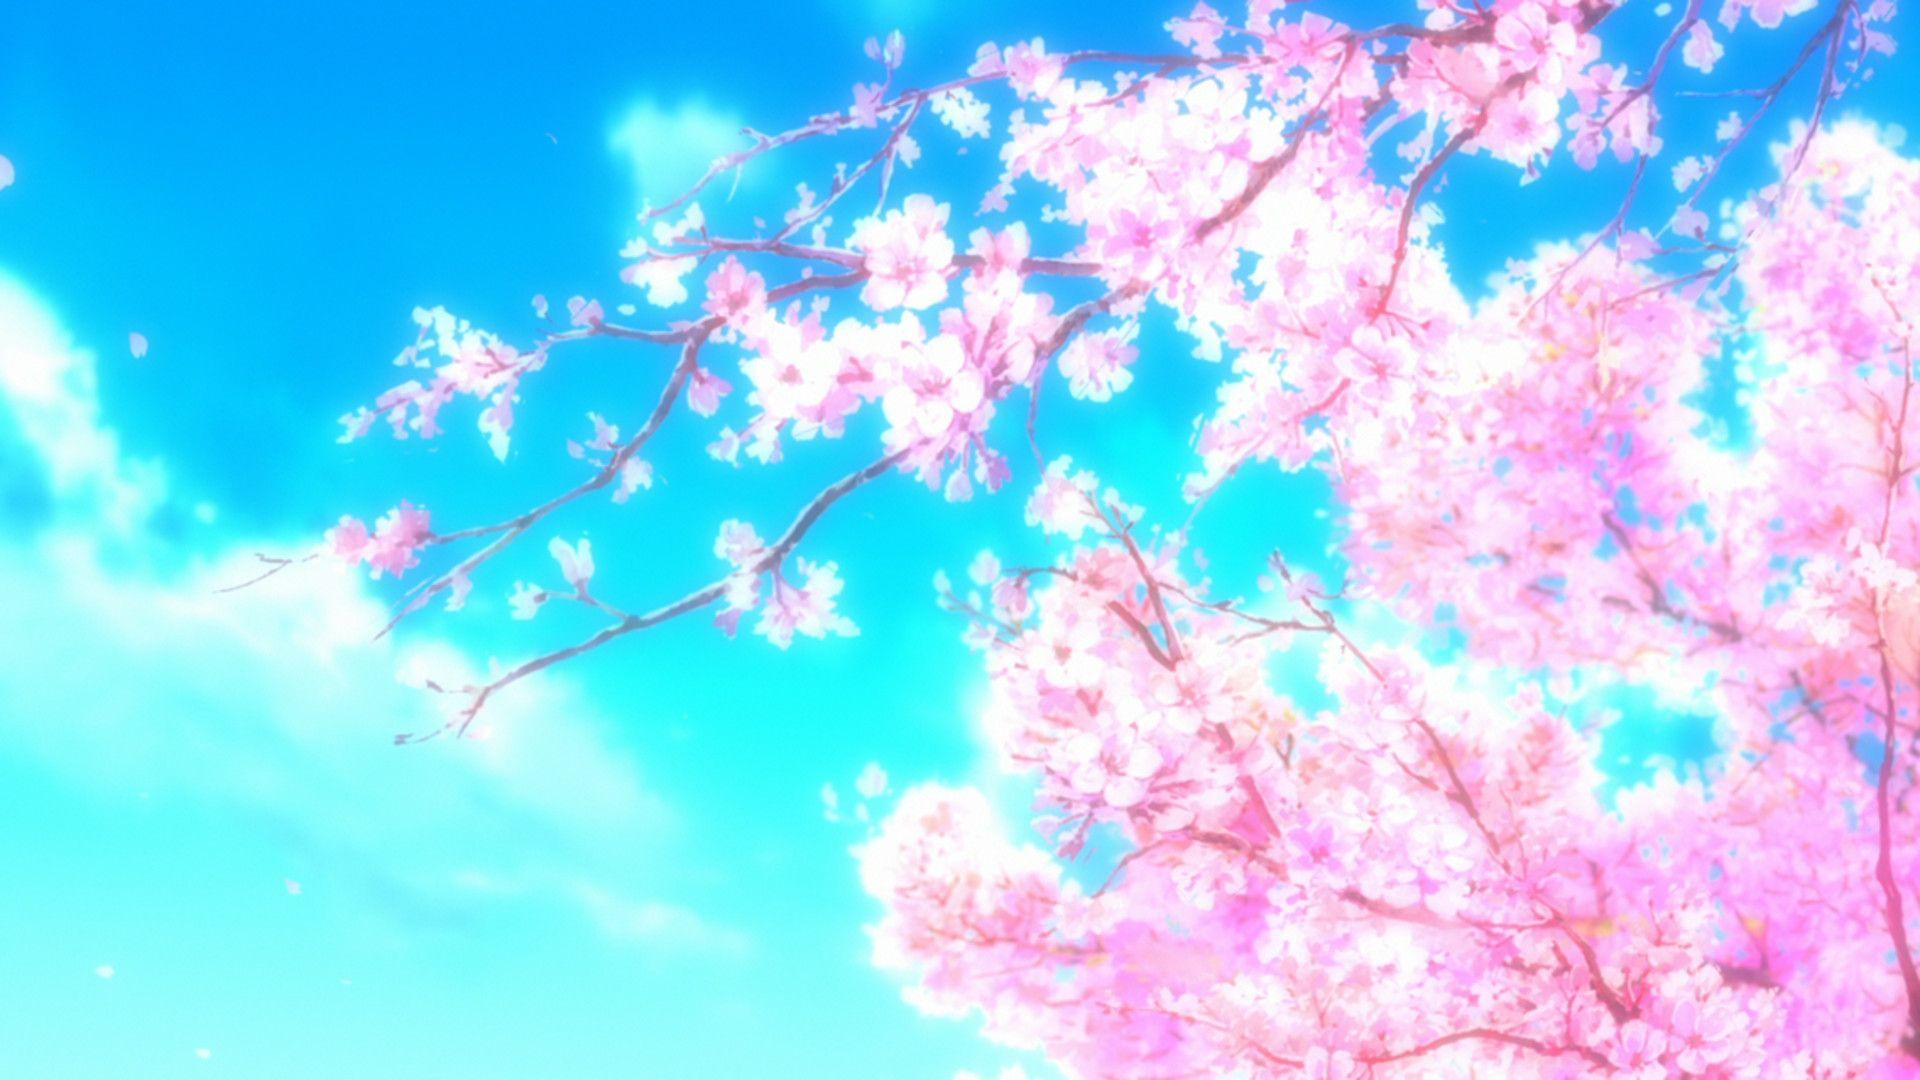 Anime Cherry Blossom Wallpaper Free Anime Cherry Blossom